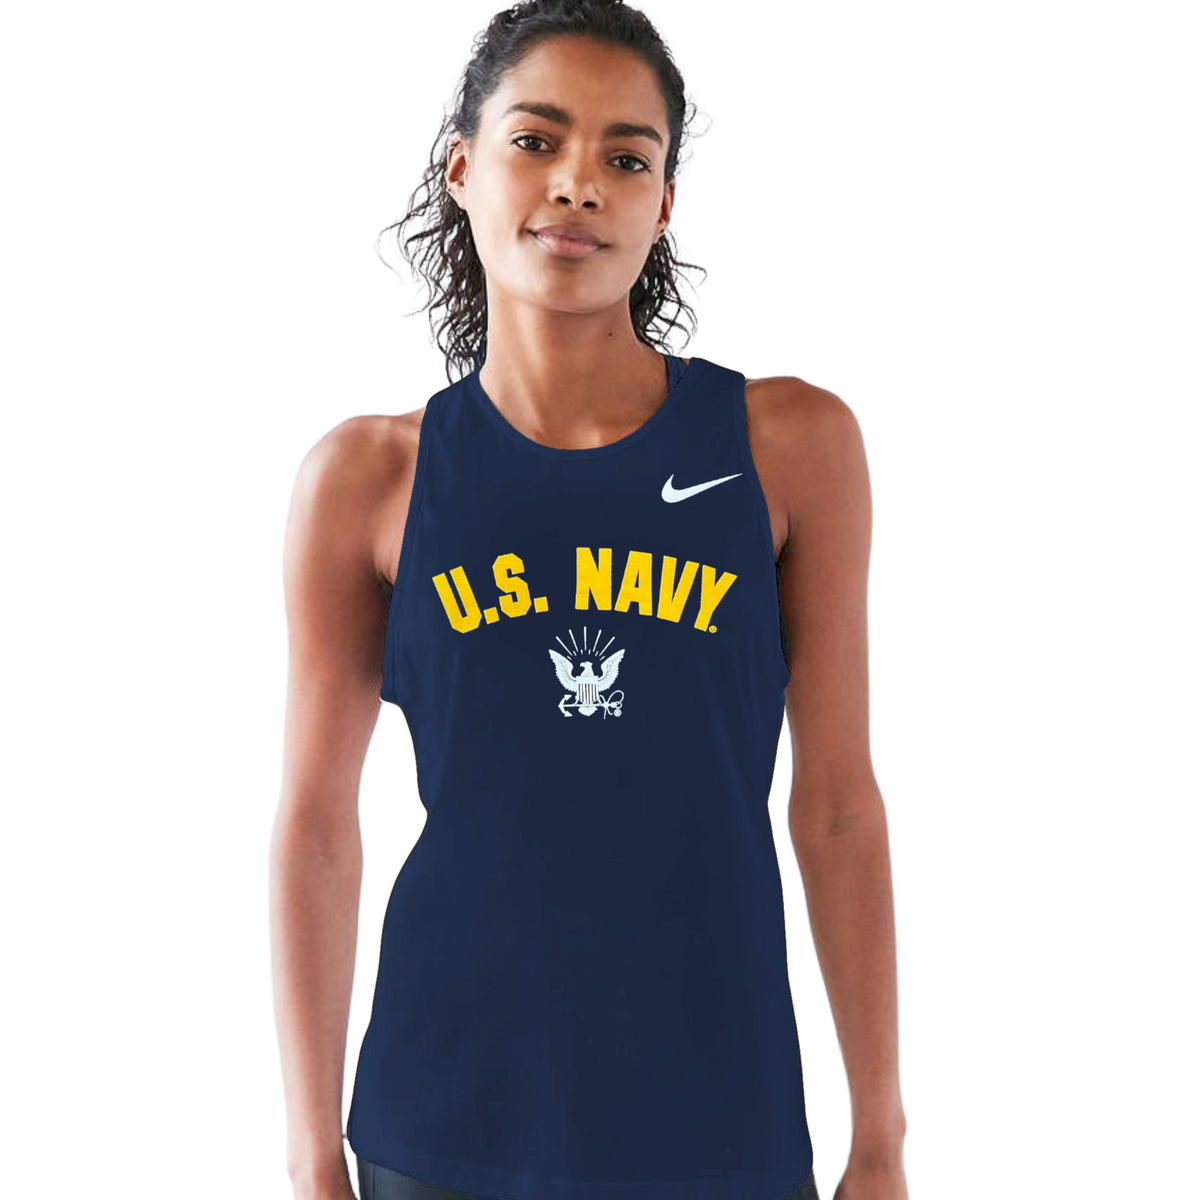 Calções Nike Team Navy para mulher - 0413NZ-451